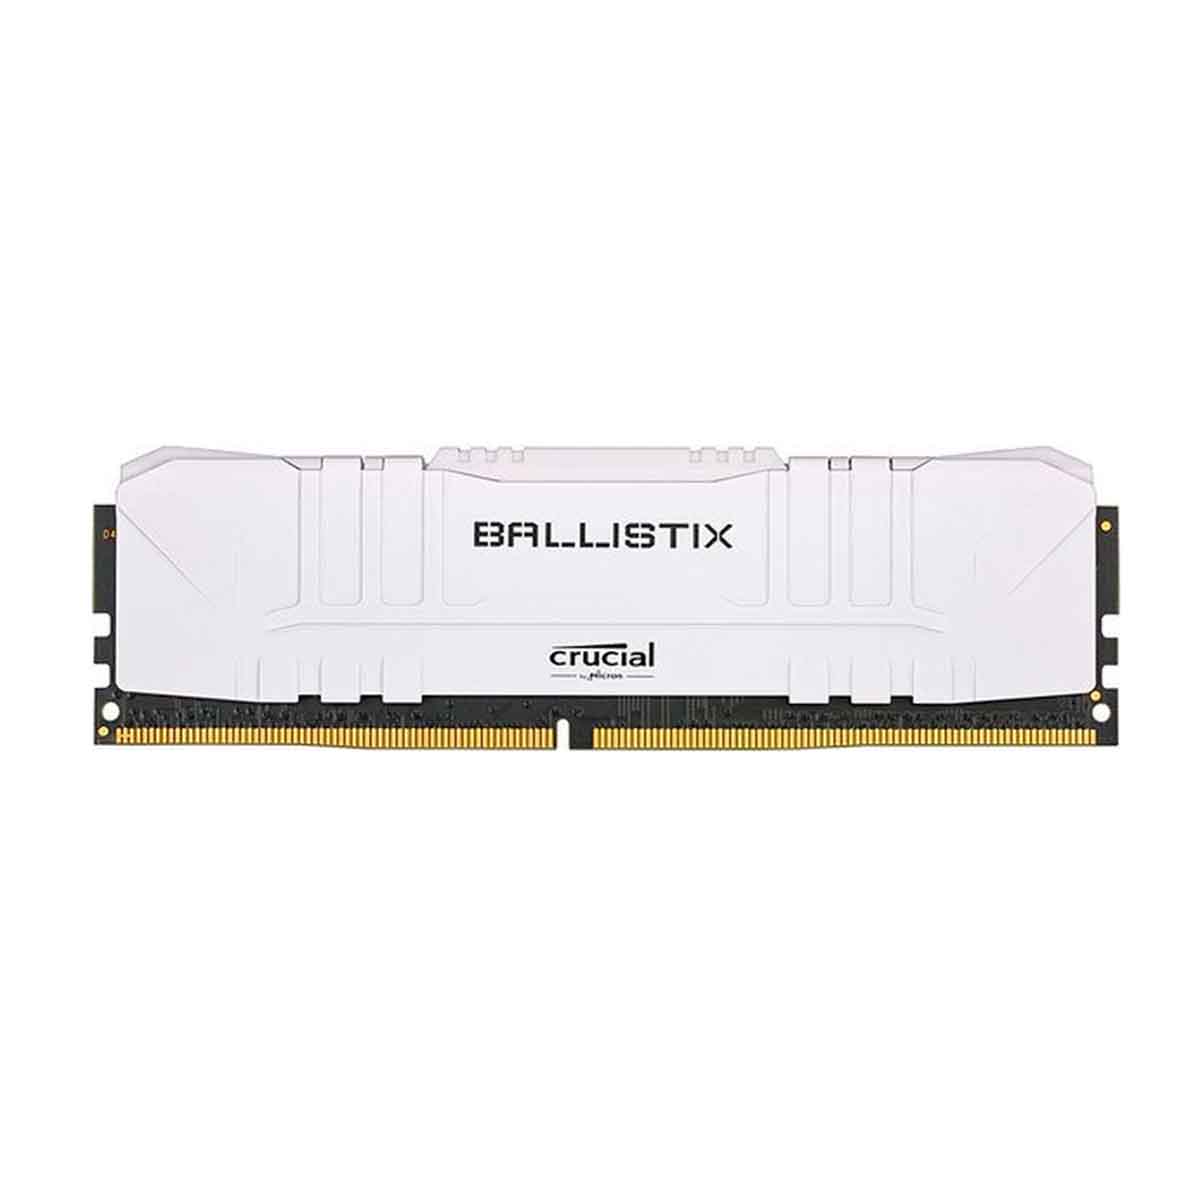 CRUCIAL BALLISTIX MEMORIA GAMMER 8GB DDR4-2666 BLANCA BL8G26C16U4W